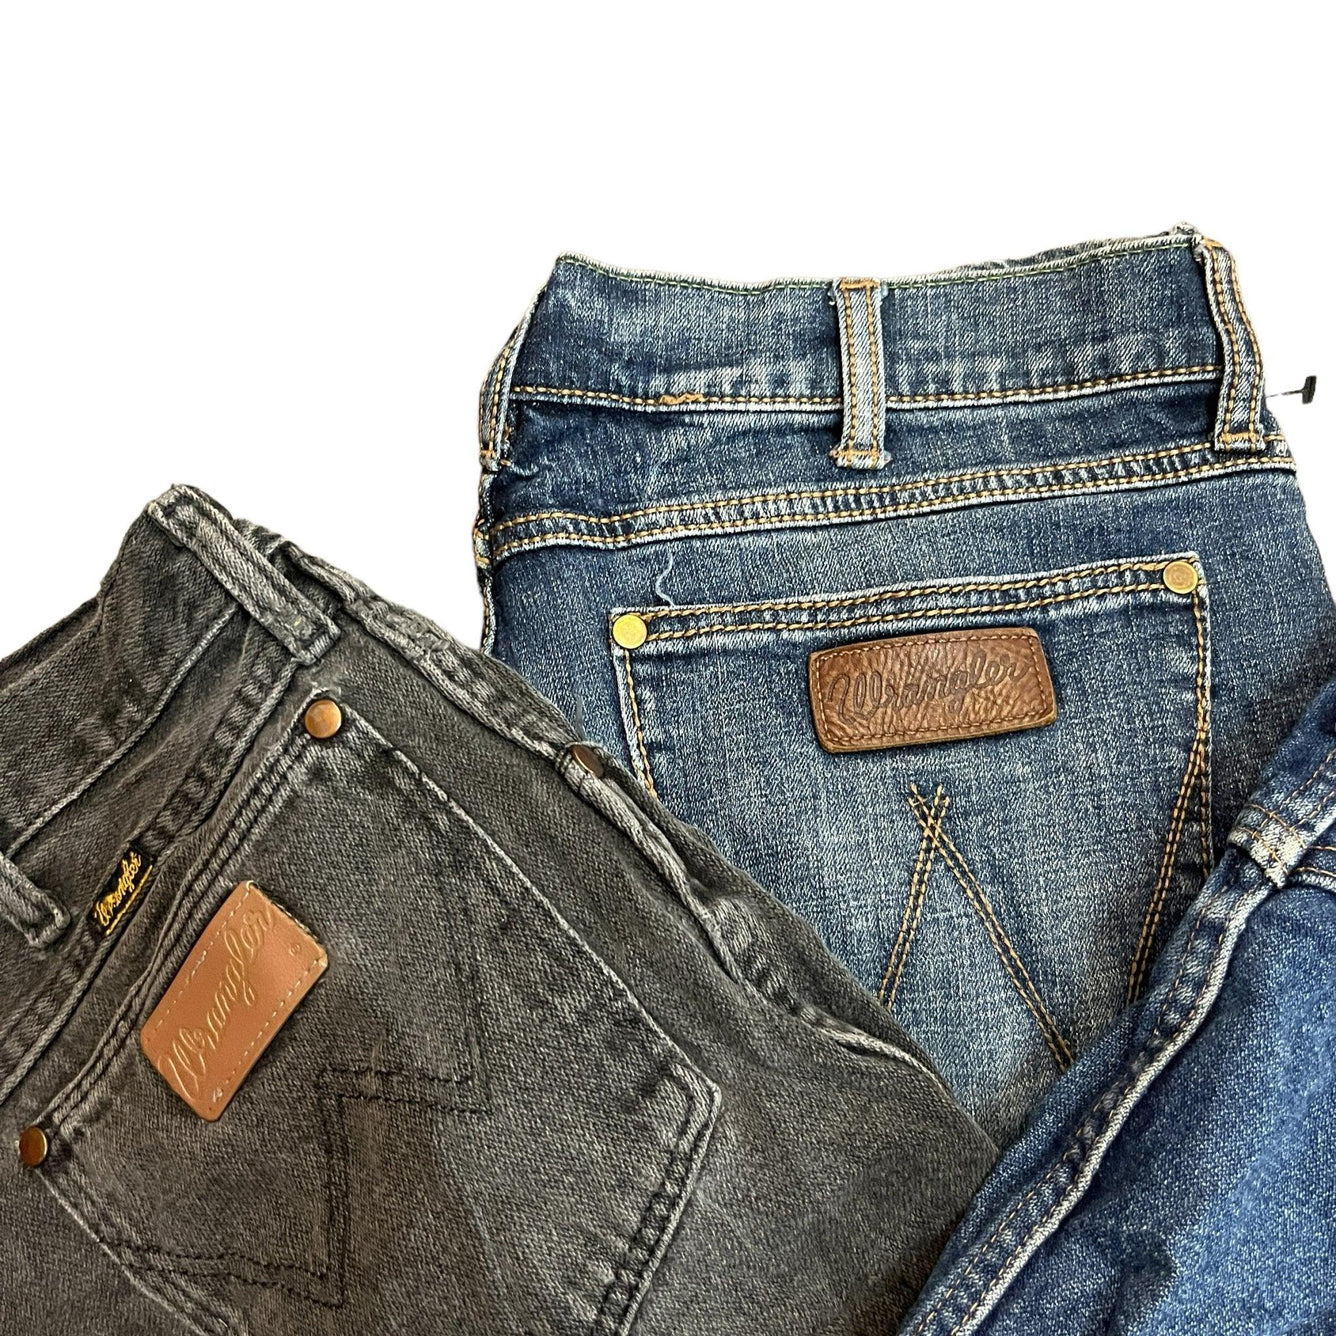 Lee Wrangler Denim Jeans Mix Per Pound - Visione Vintage